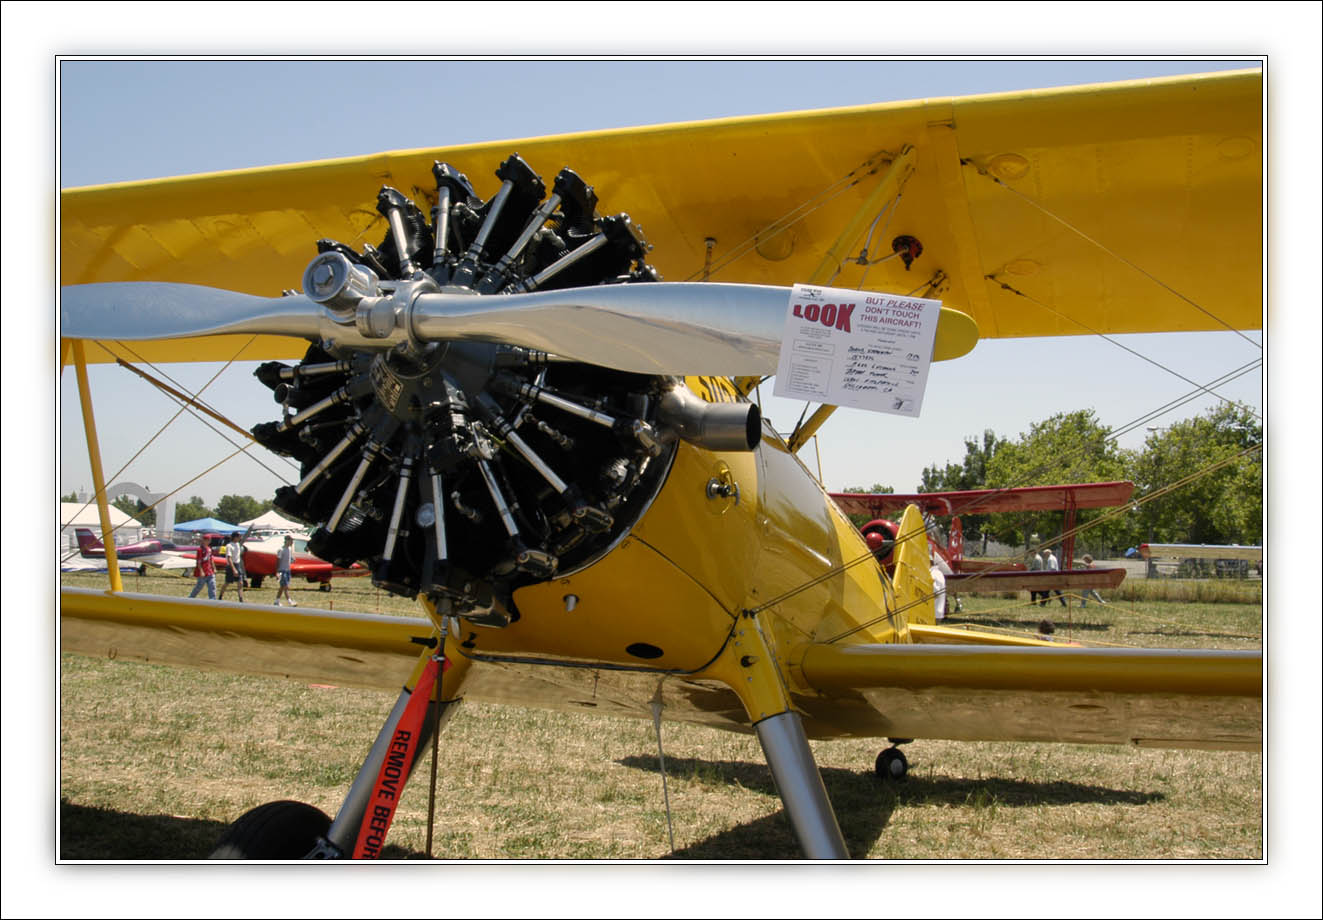 Steerman Biplane-01